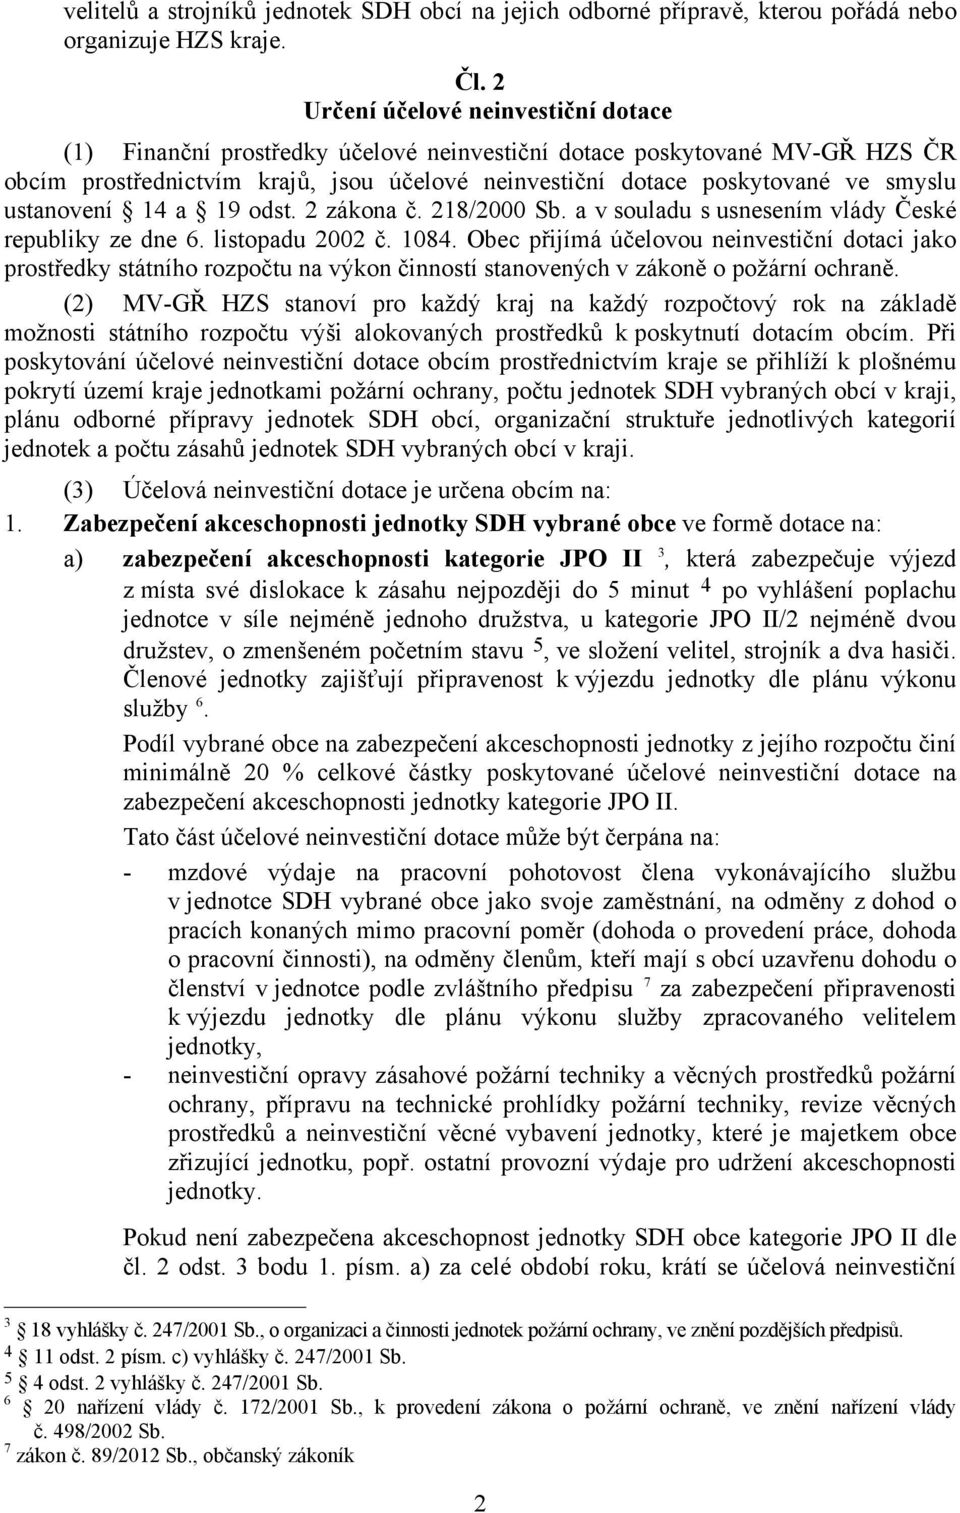 ustanovení 14 a 19 odst. 2 zákona č. 218/2000 Sb. a v souladu s usnesením vlády České republiky ze dne 6. listopadu 2002 č. 1084.